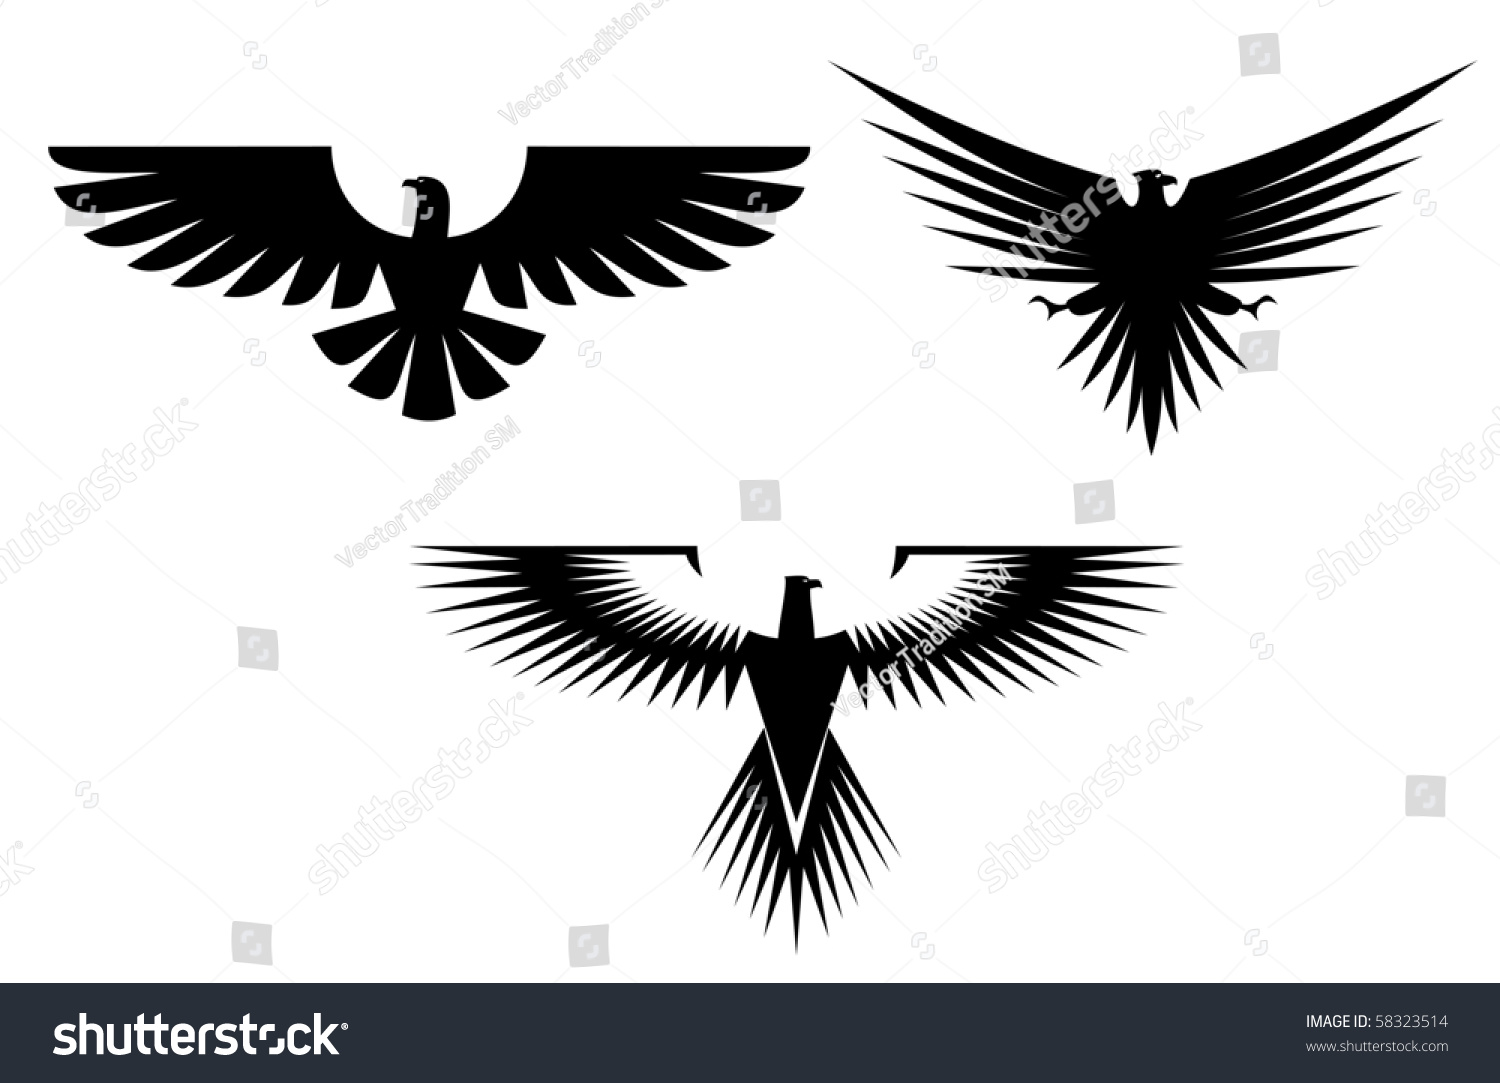 Орёл с расправленными крыльями символ